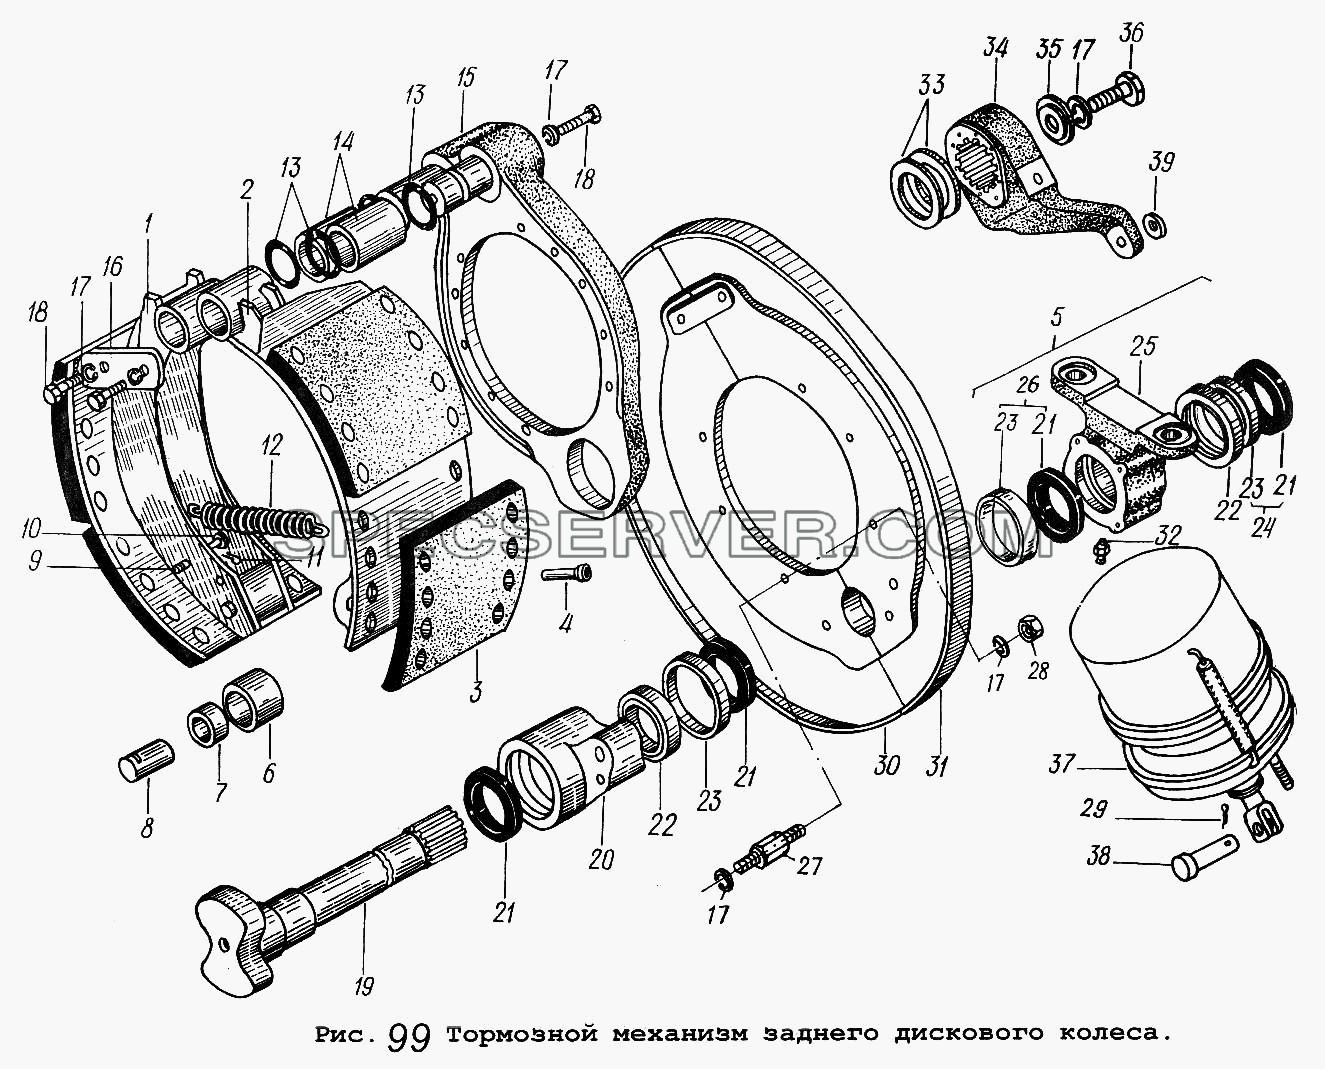 Тормозной механизм заднего дискового колеса для МАЗ-5337 (список запасных частей)